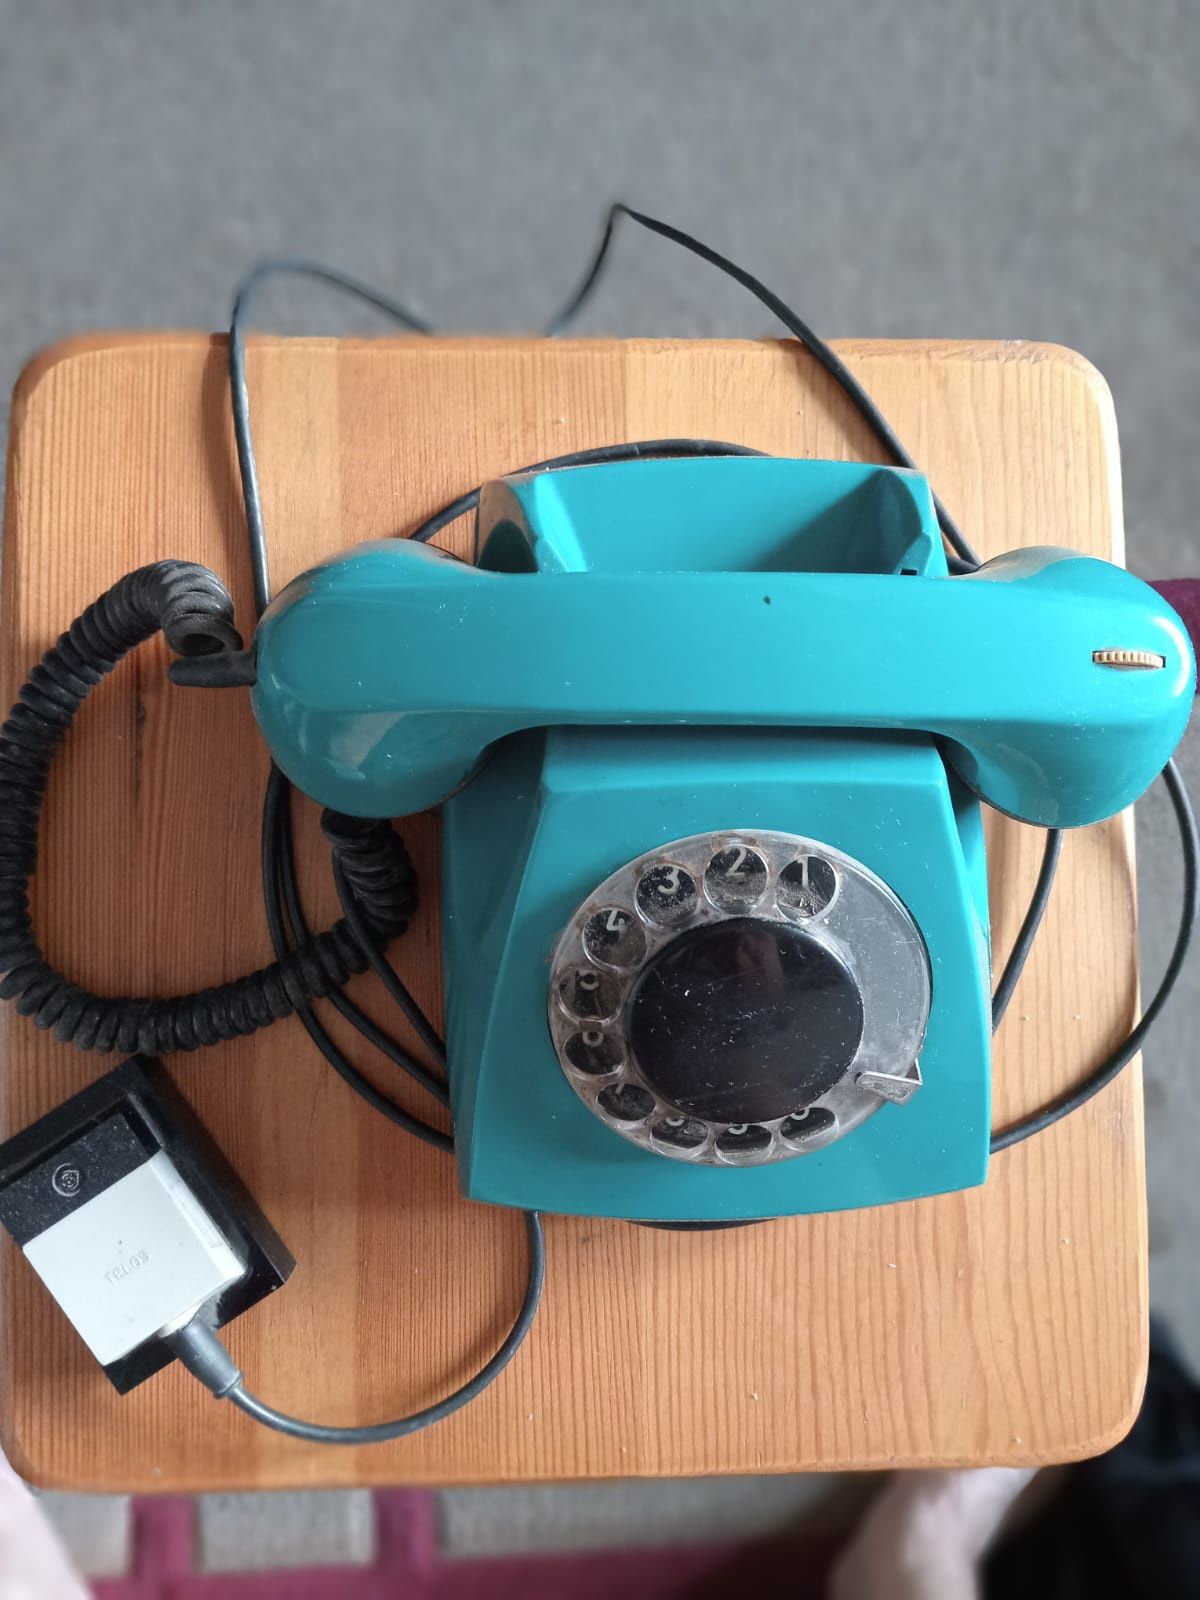 Продам радиоприемники и телефонный аппарат70-х годов прошлого столетия